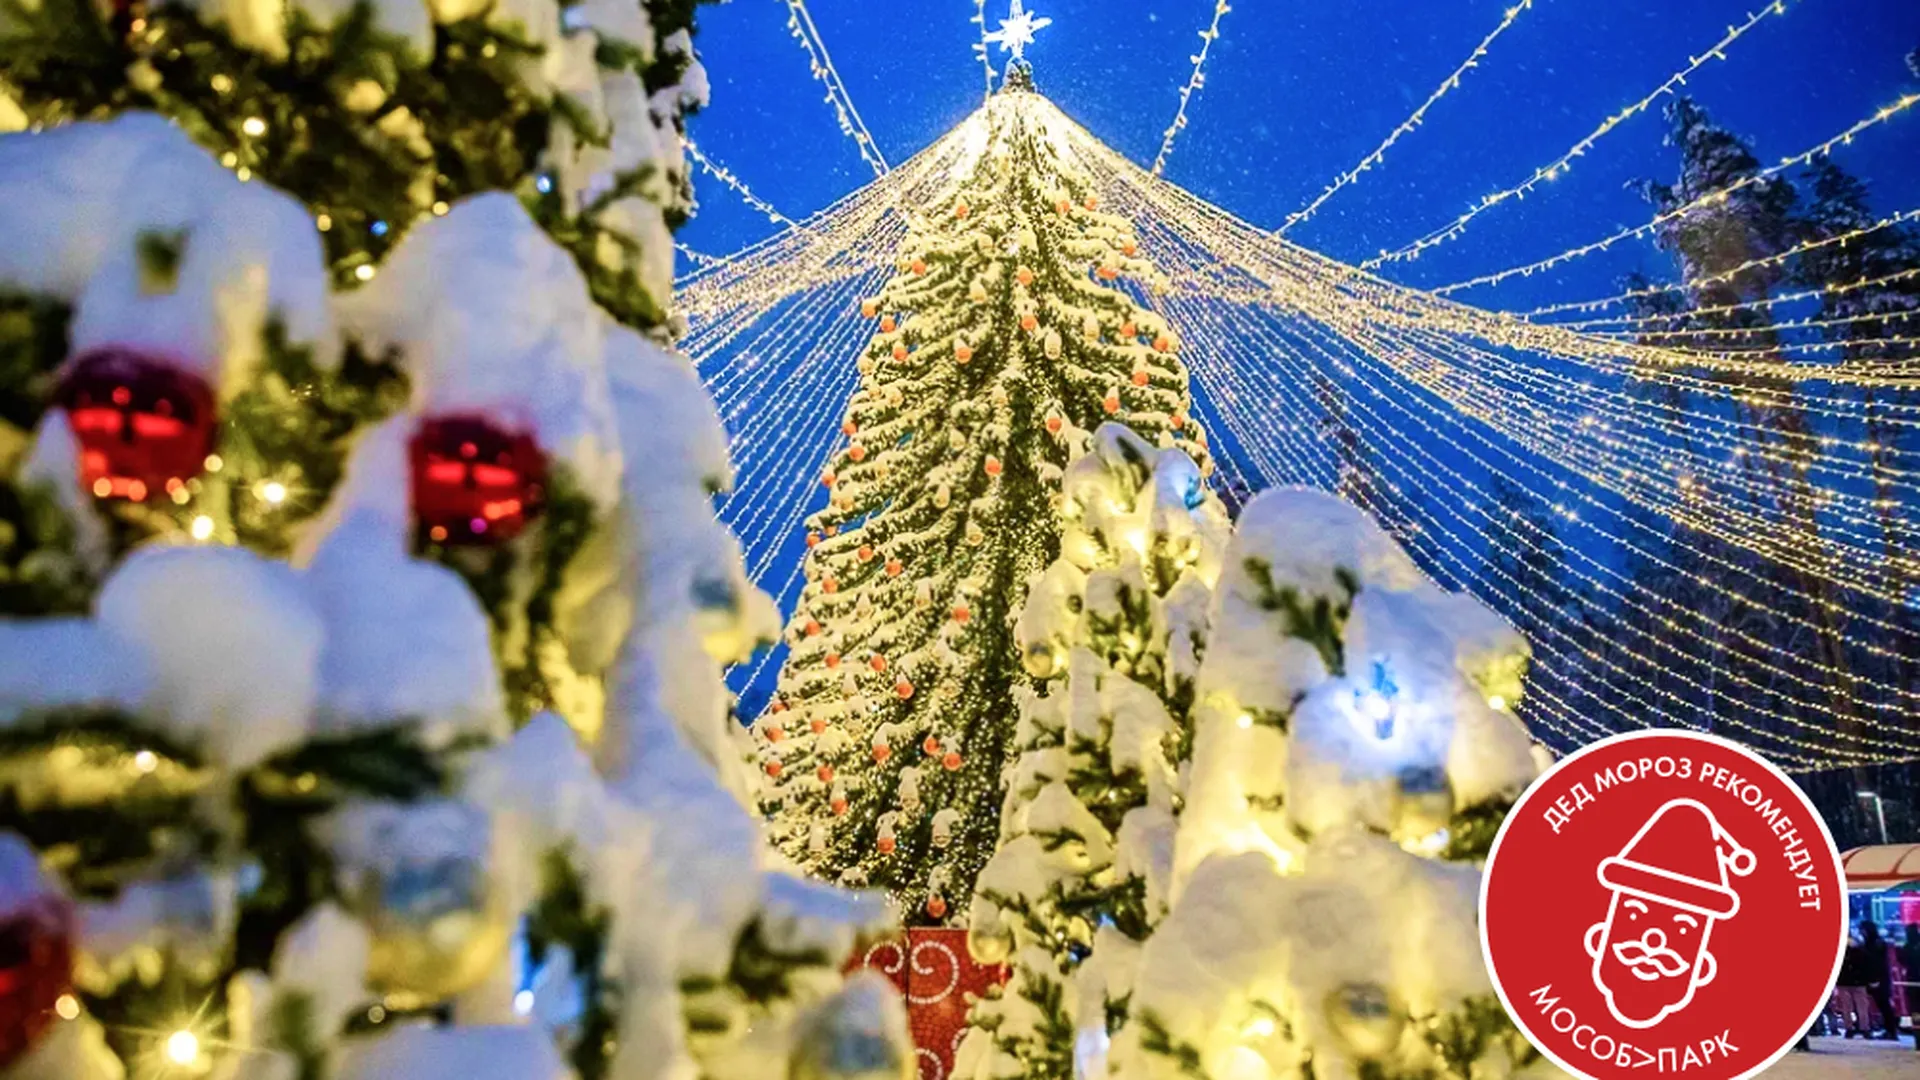 Центральный парк Реутова получил знак качества «Дед Мороз рекомендует»